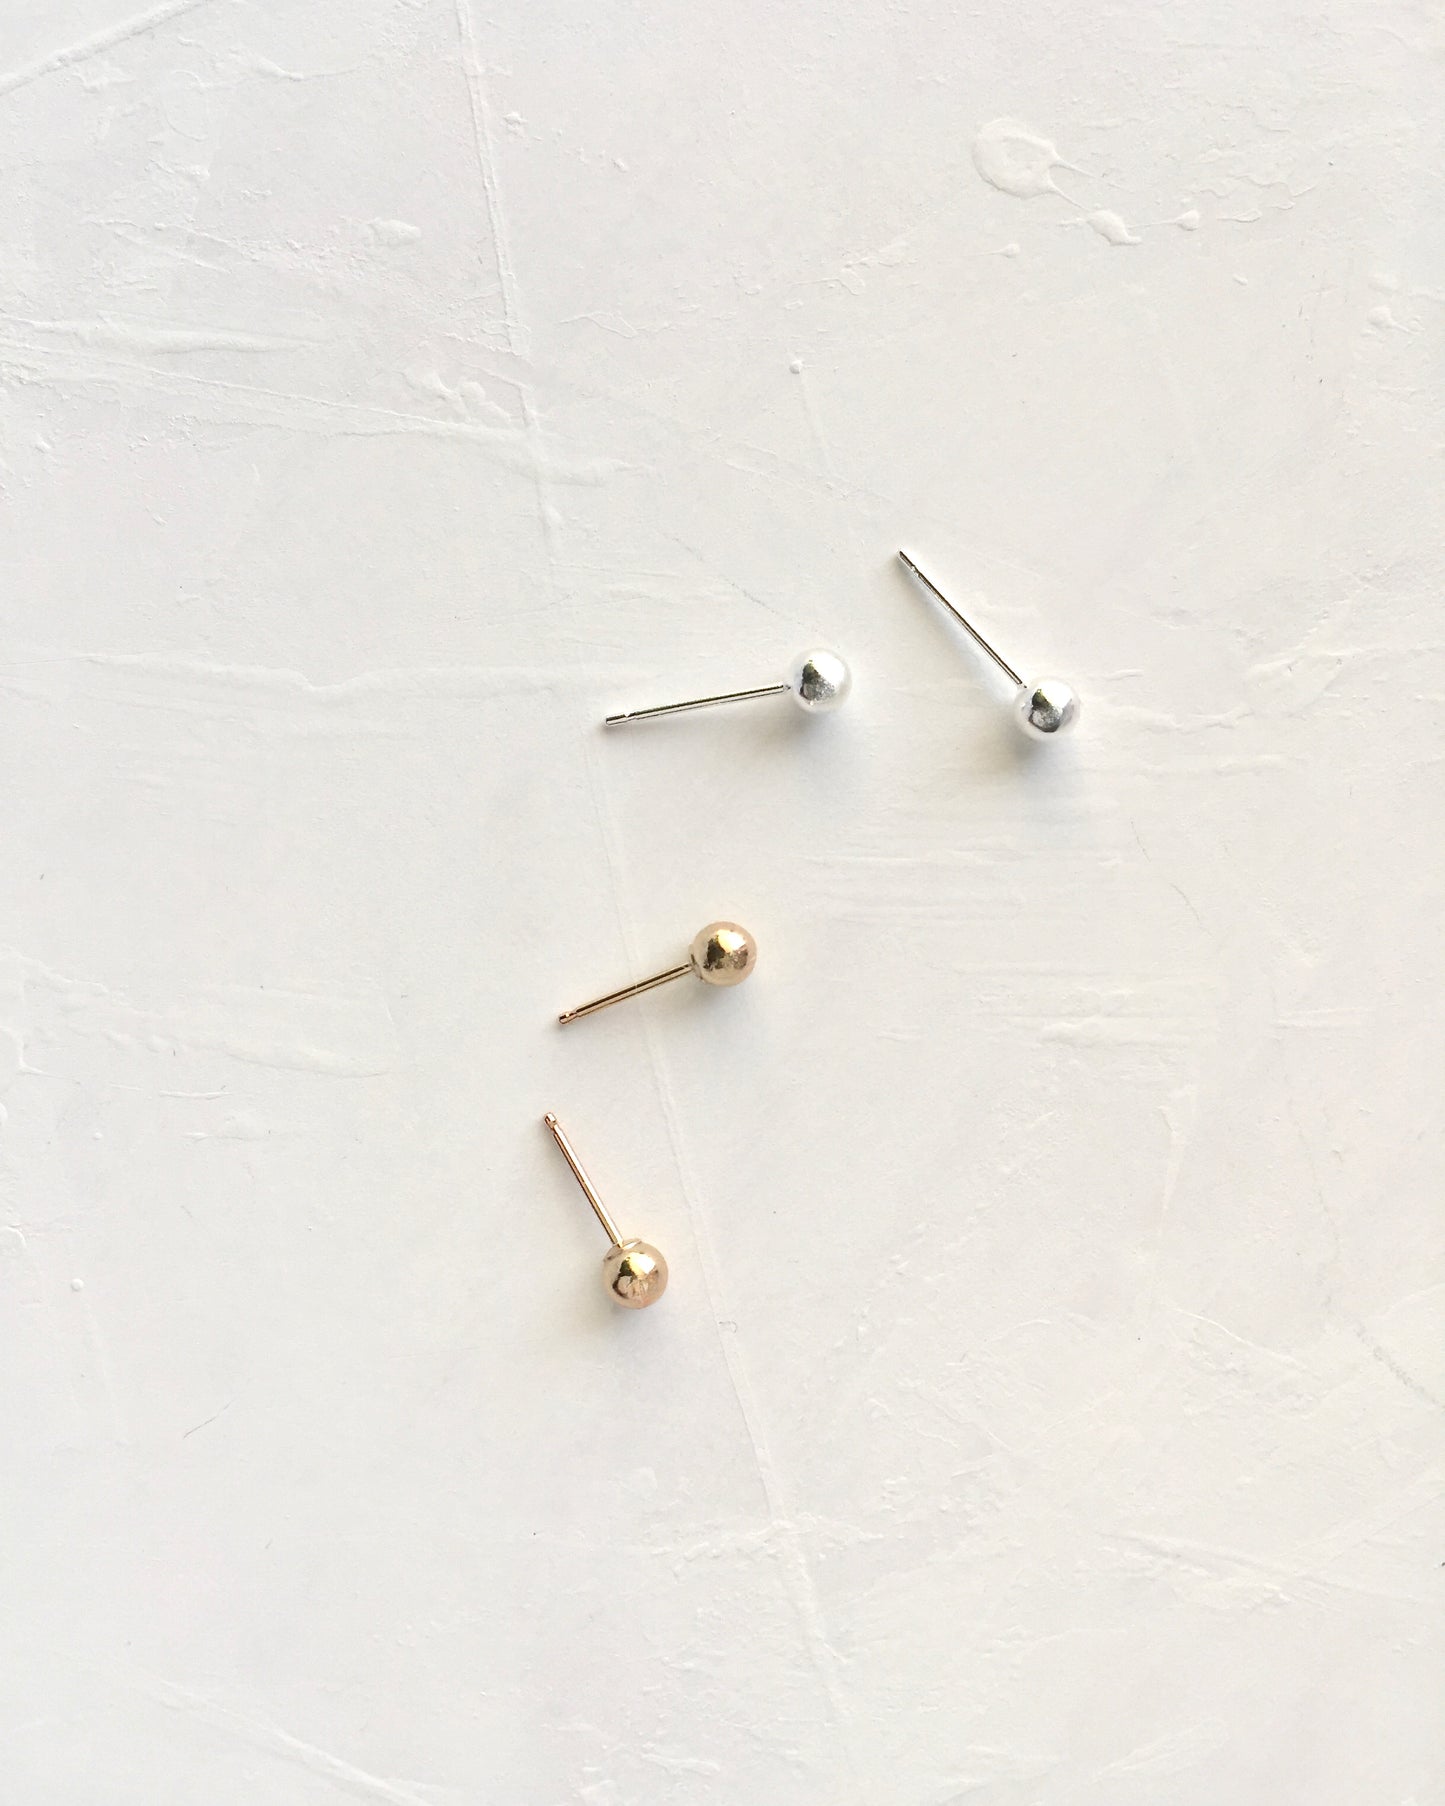 Minimalist Everyday Earrings | Simple Ball Stud Earrings | Delicate Stud Earrings | IB Jewelry